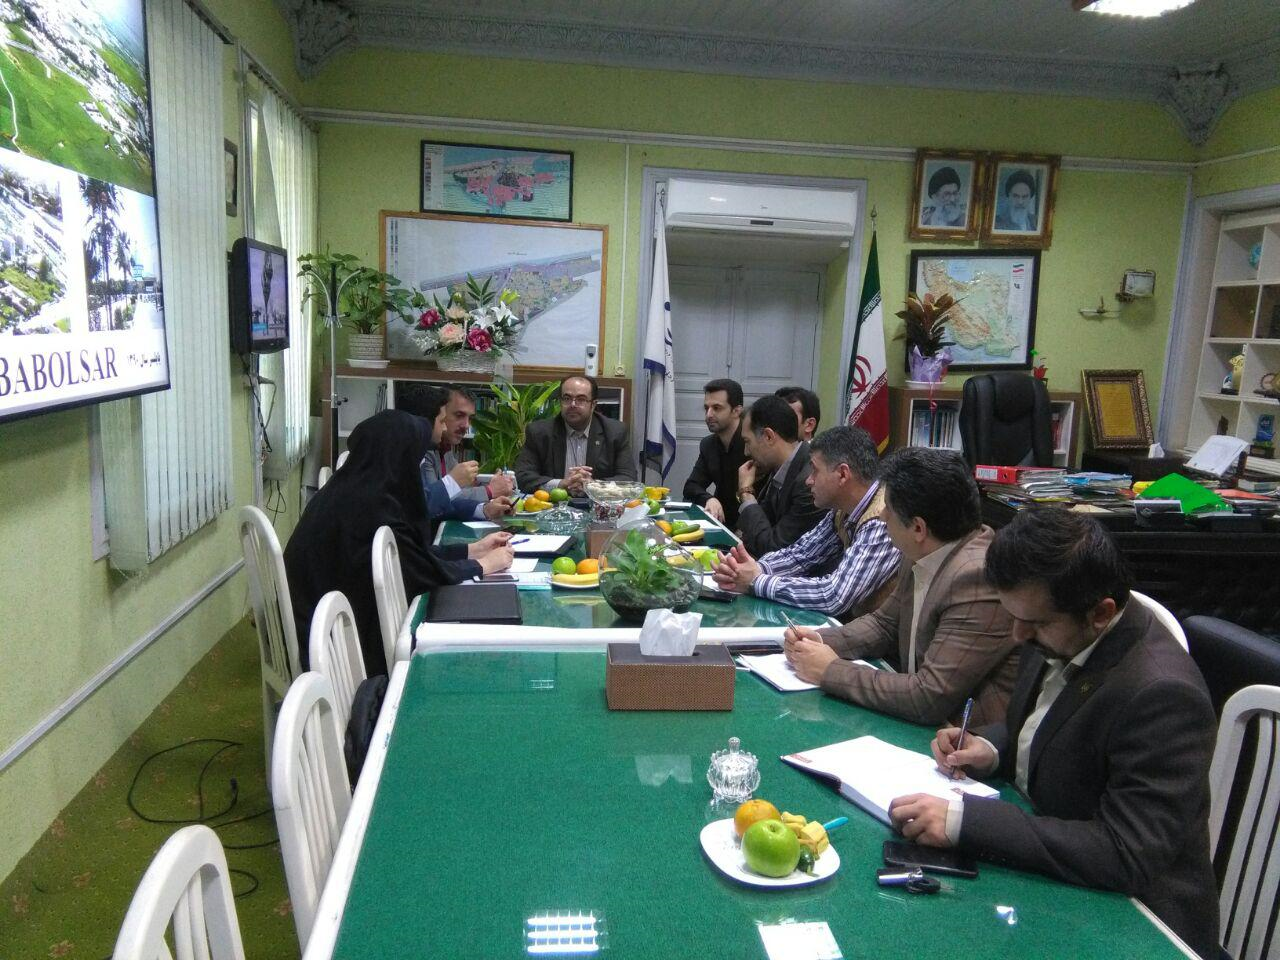 جلسه کارگروه تخصصی منظر و سیمای شهری در شهرستان بابلسر برگزار شد